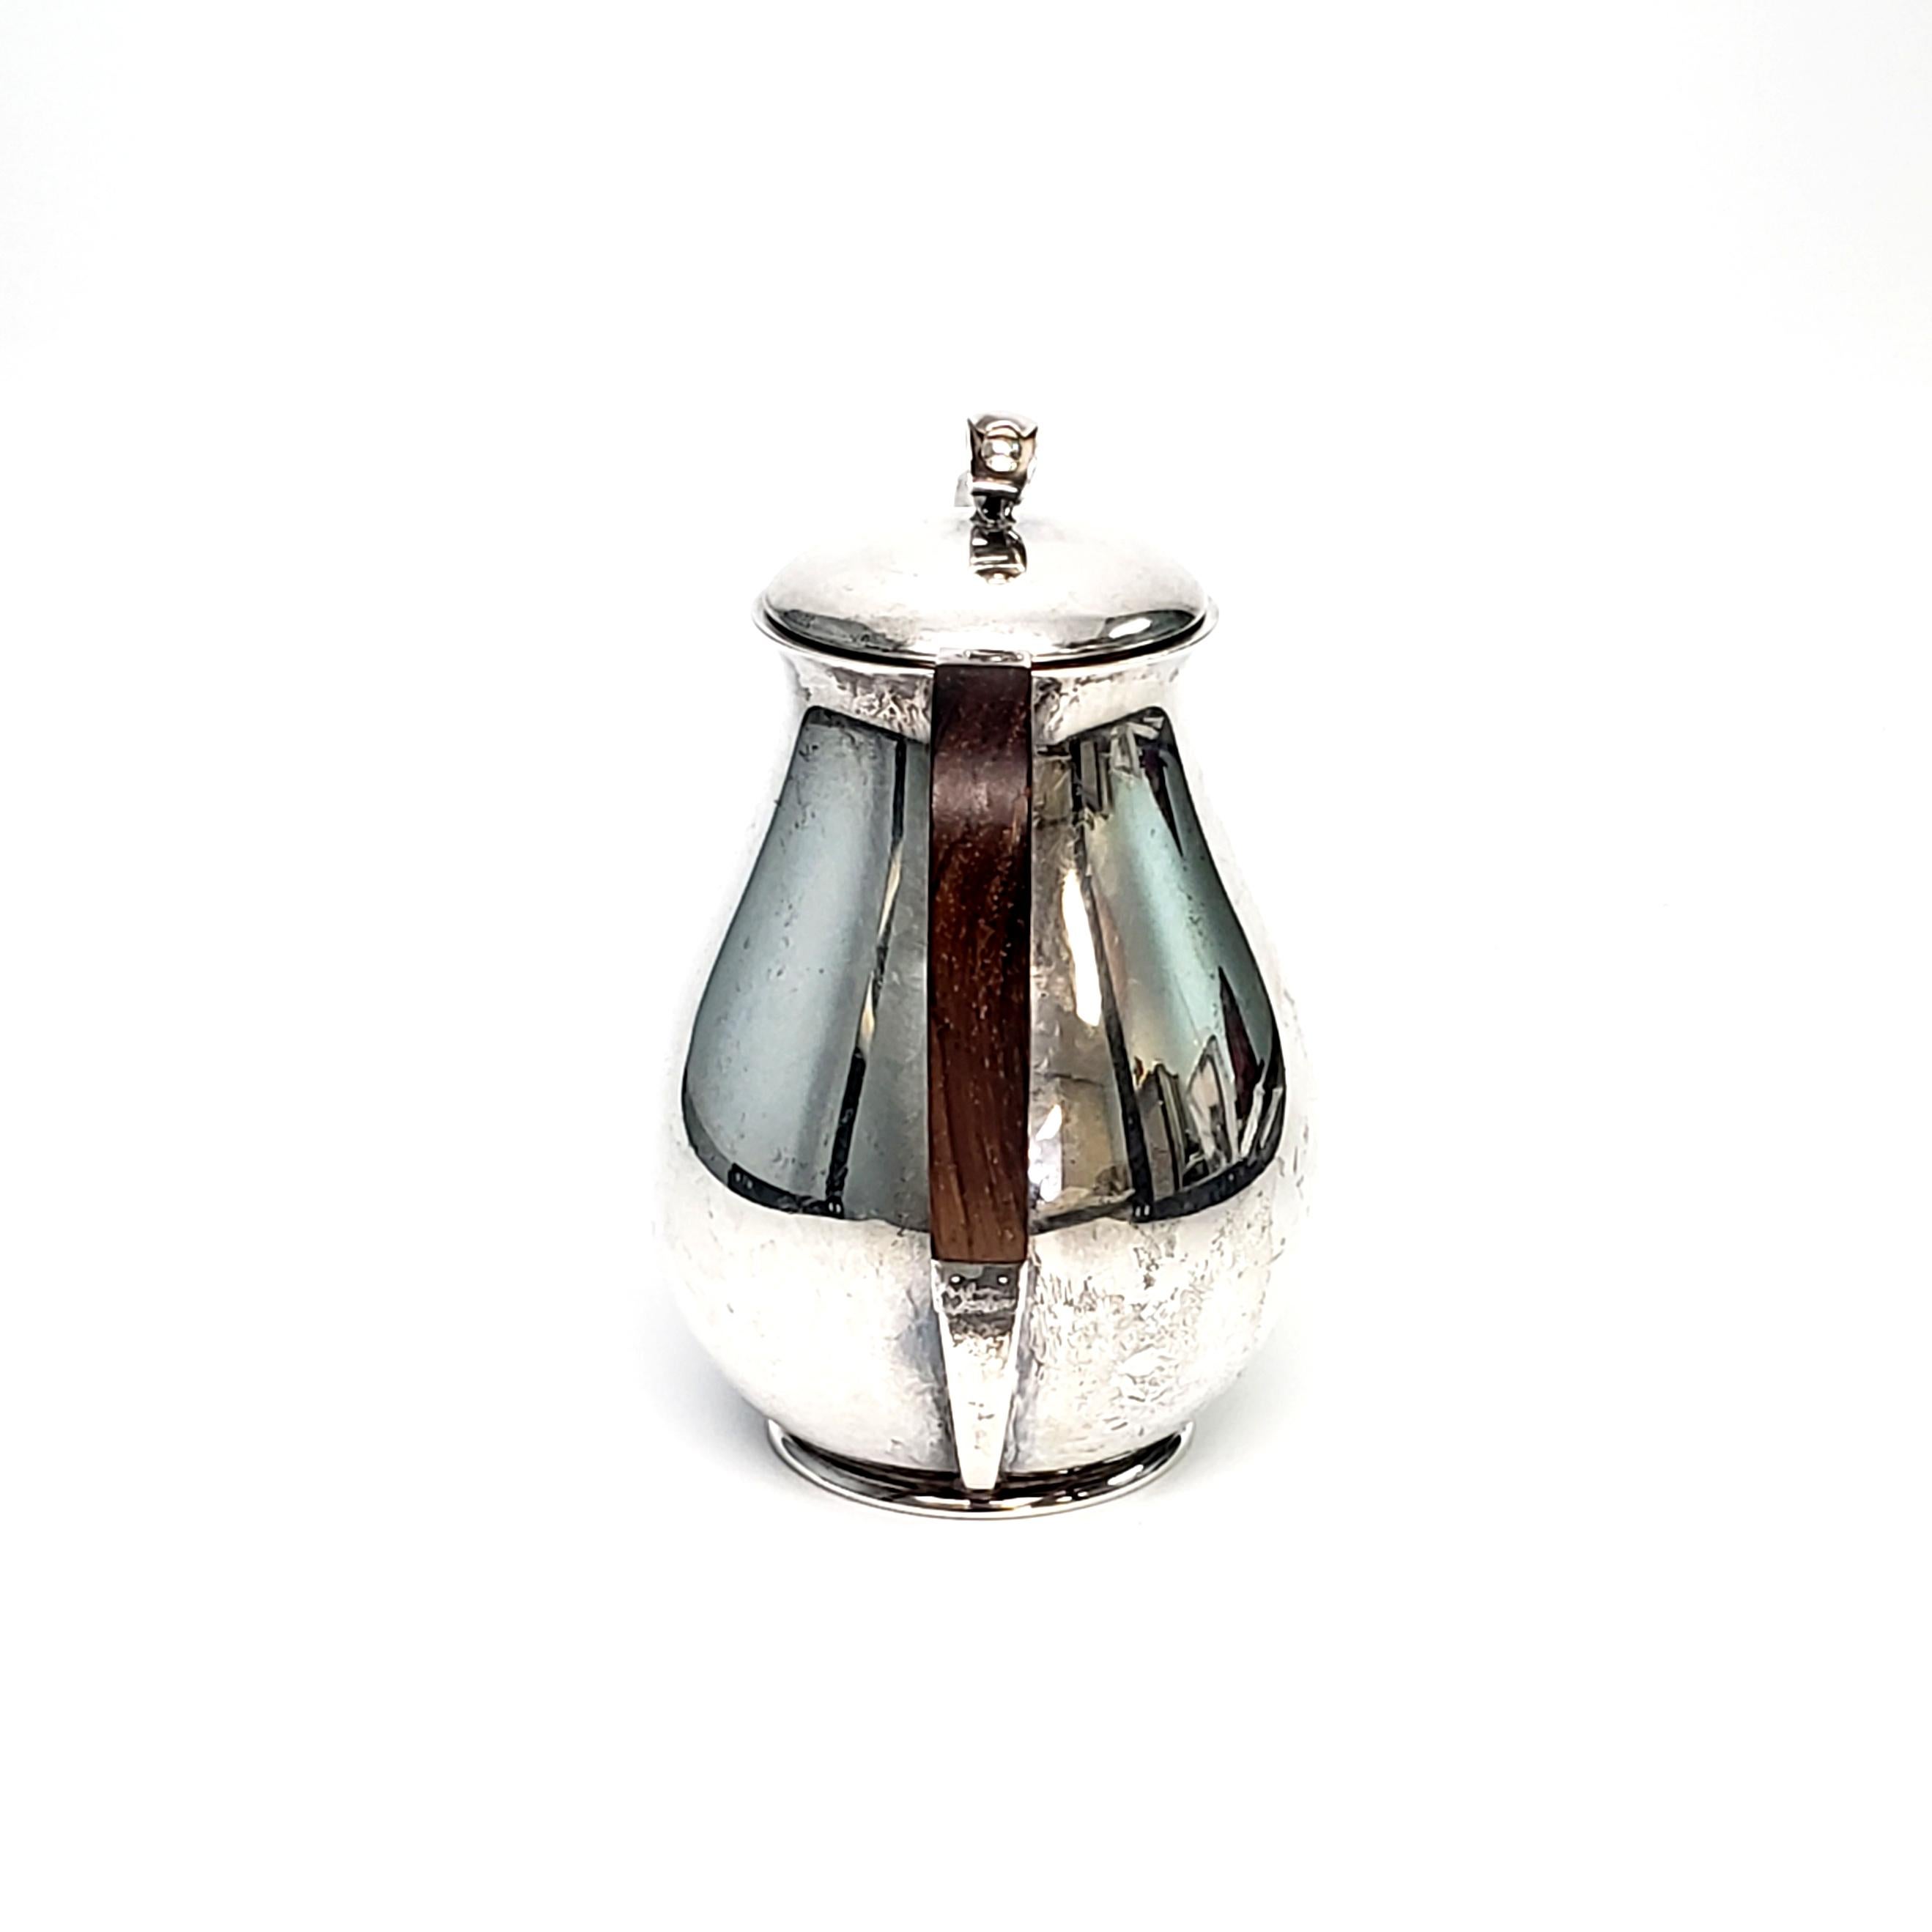 Kaffeekanne aus Sterlingsilber von Holger Rasmussen aus Kopenhagen, Dänemark 1945-1956.

Das schlichte, klar gegliederte, modernistische Design macht diese Uhr zu einem zeitlosen Stück, das an den Stil von Georg Jensen erinnert.

Maße: ca. 7 1/4